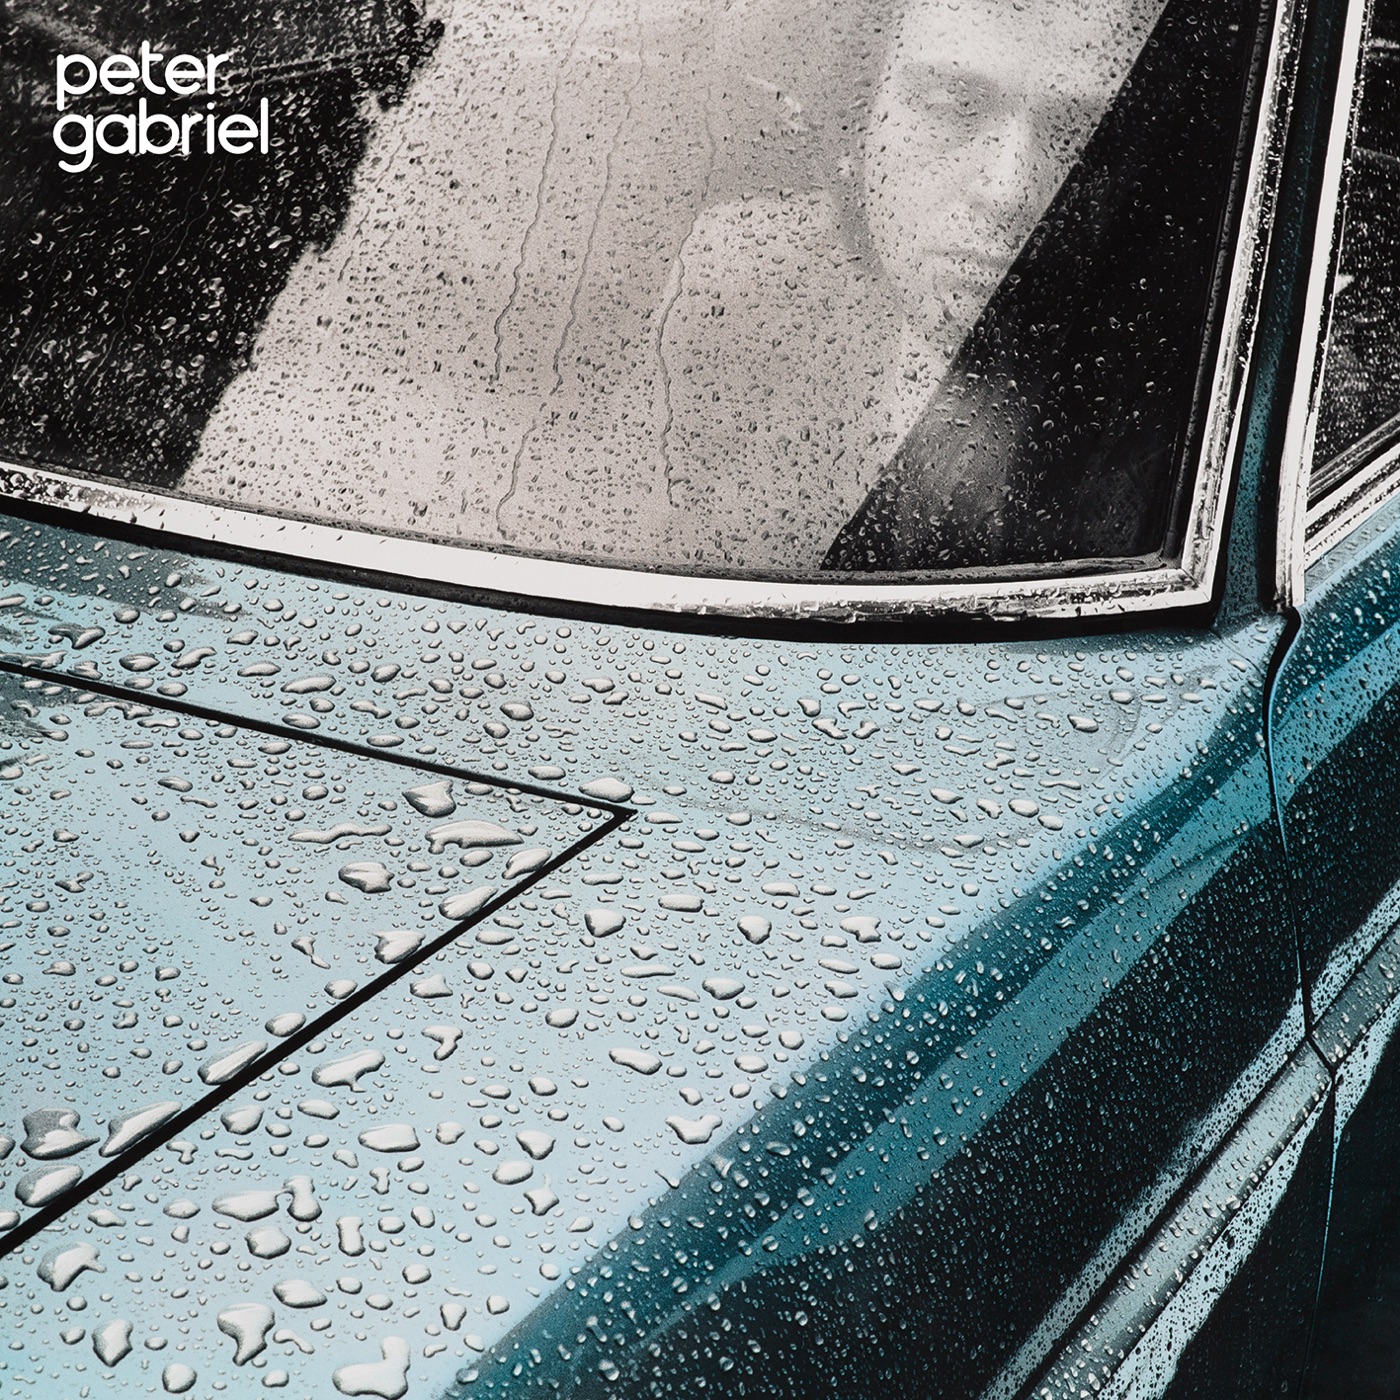 Peter Gabriel 1: Car by Peter Gabriel